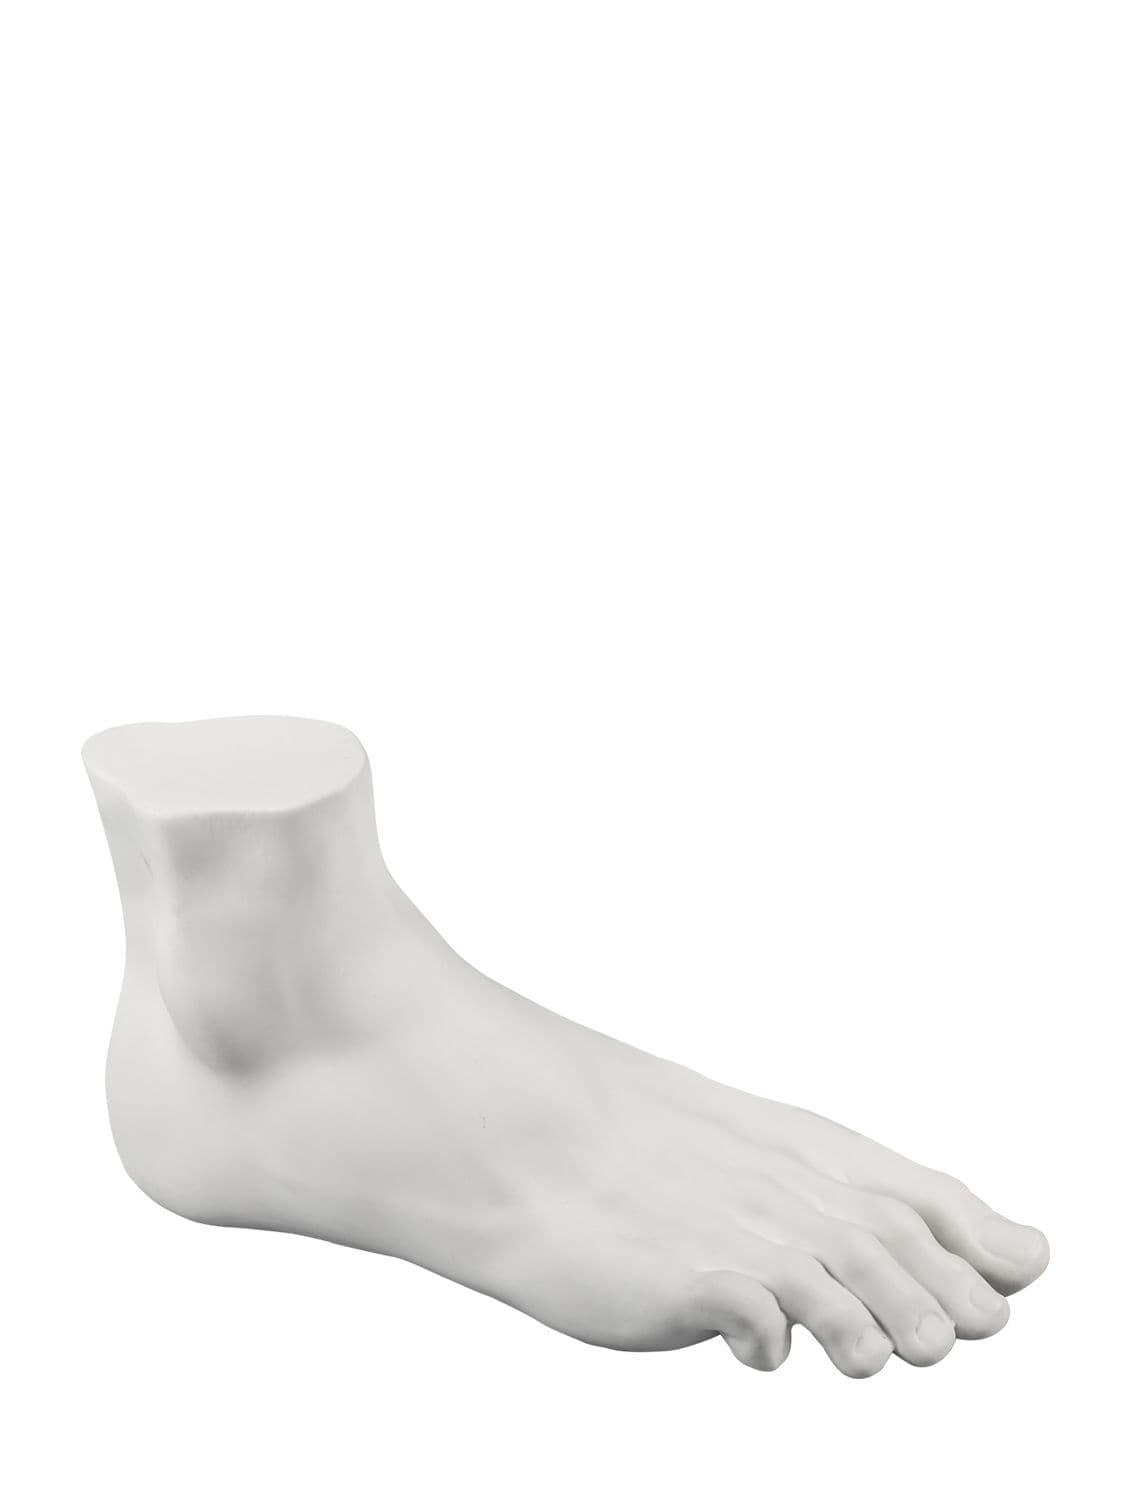 Seletti Memorabilia Mvsevm Porcelain Male Foot In White